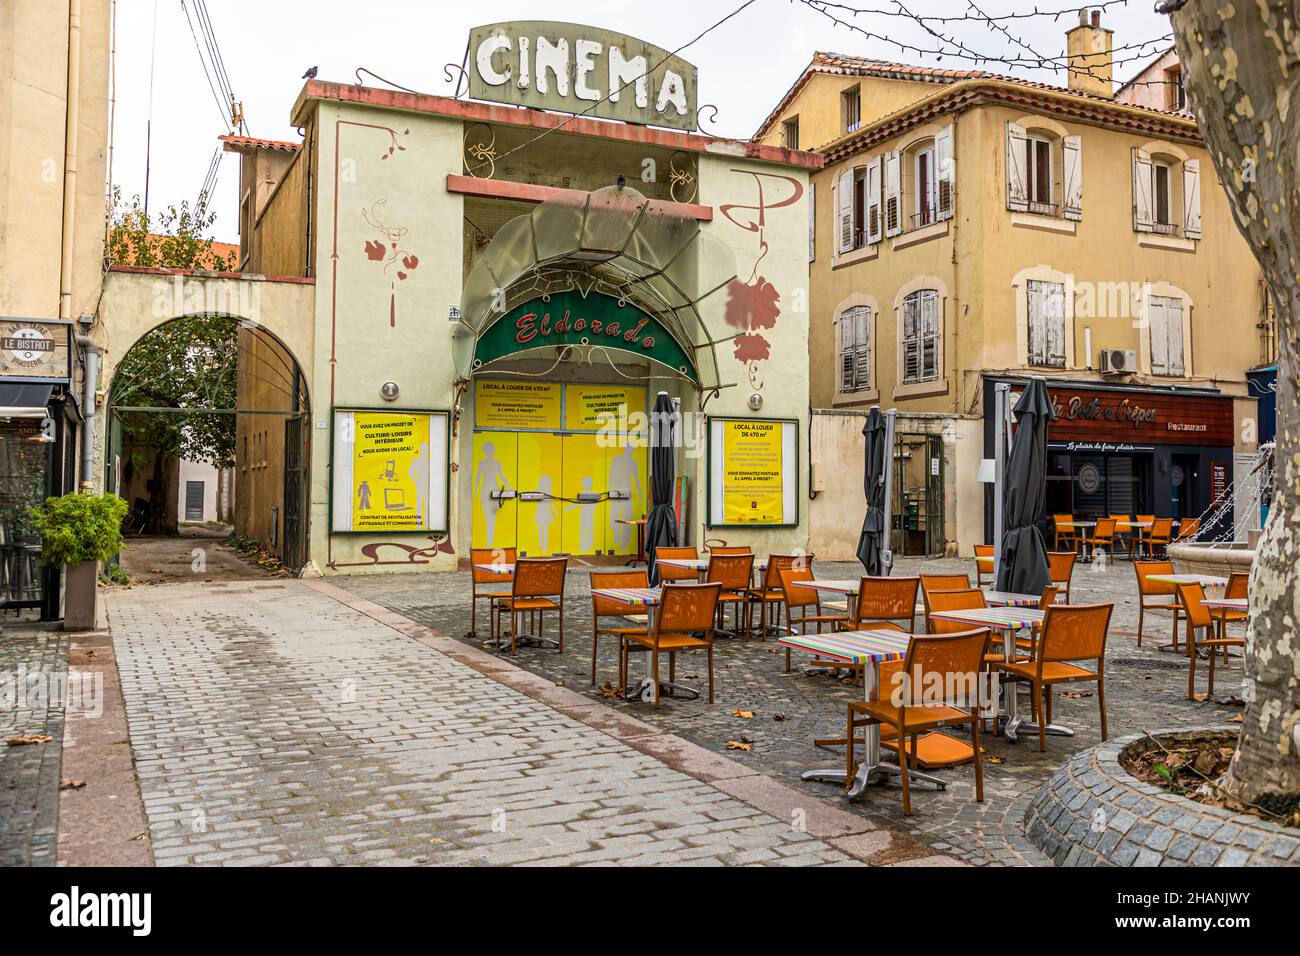 Cinéma à Draguignan, France Banque D'Images